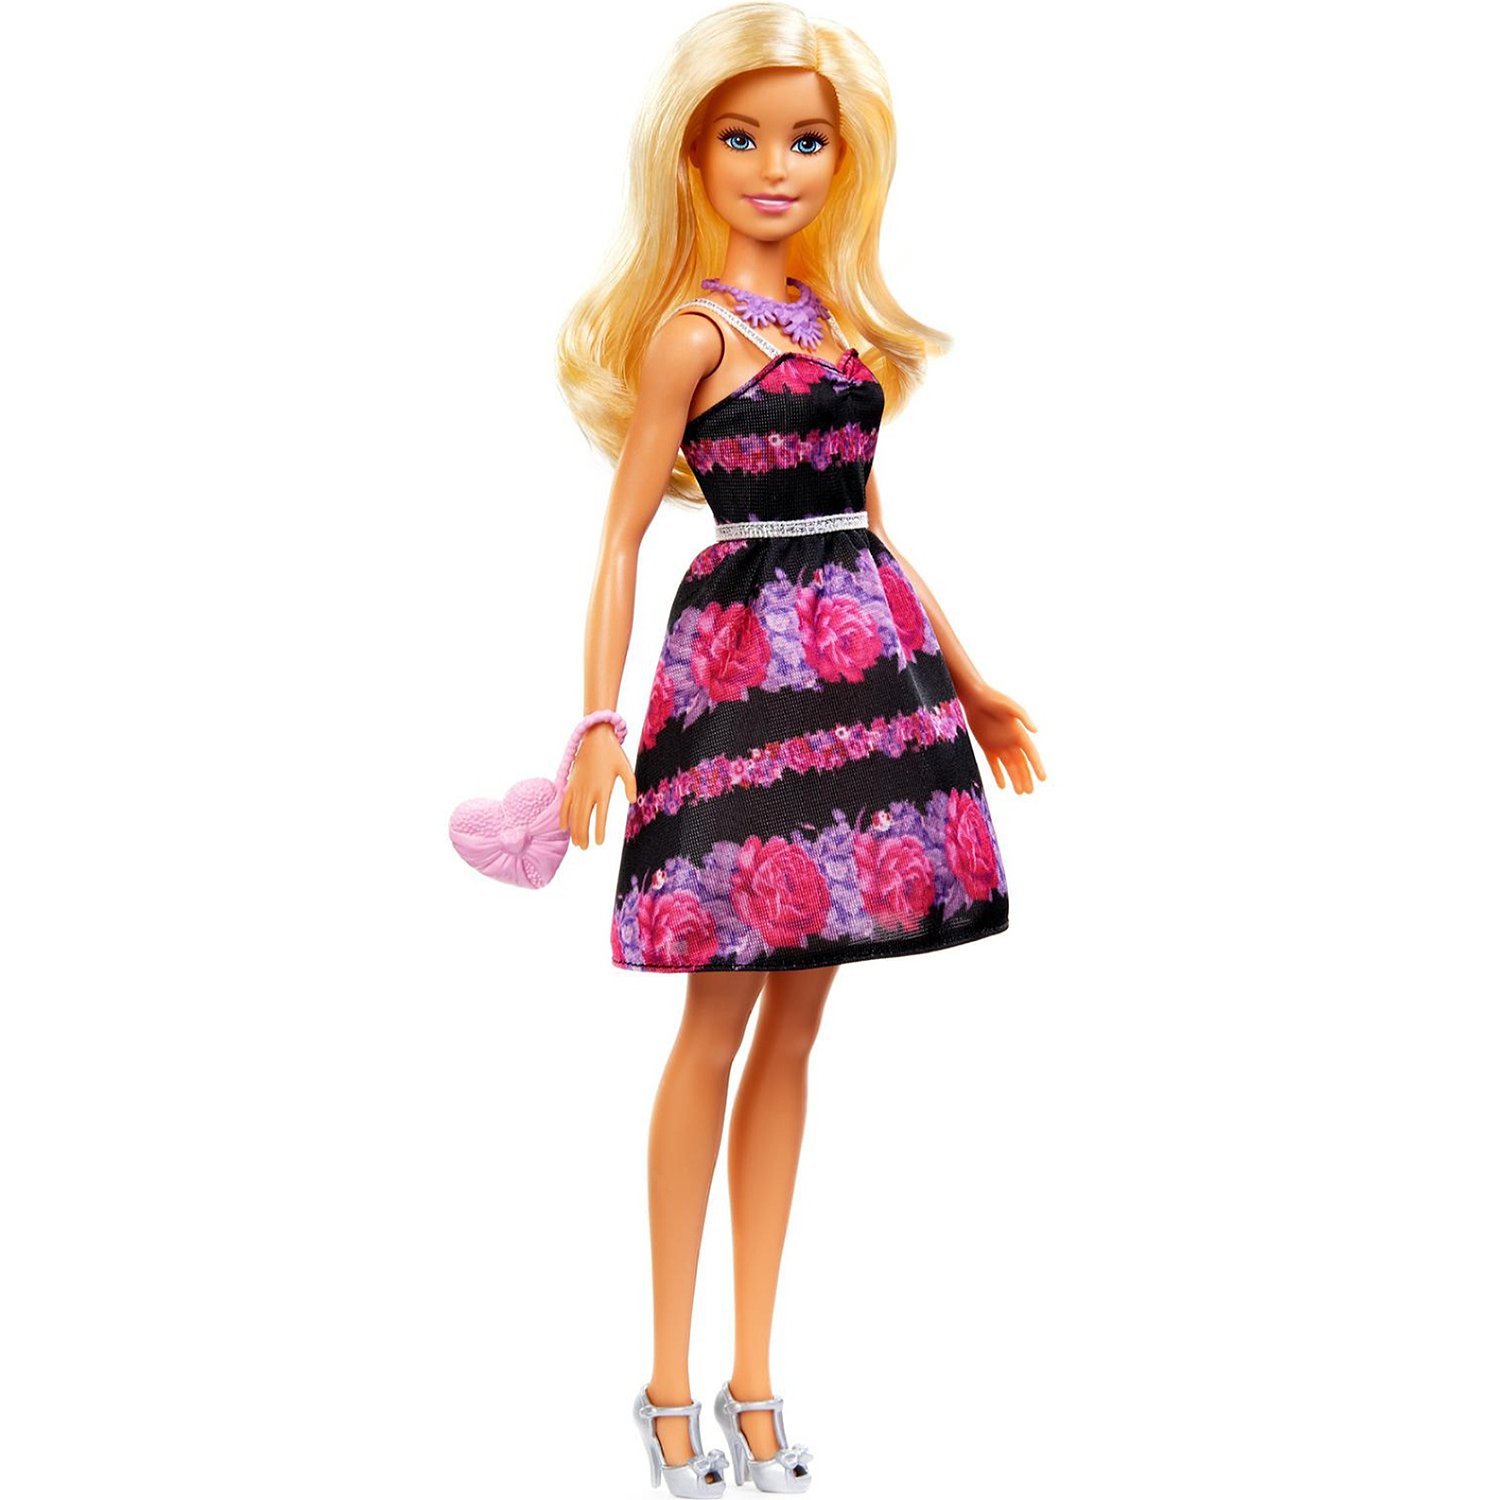 Набор игровой Barbie Гардероб мечты раскладной GBK12